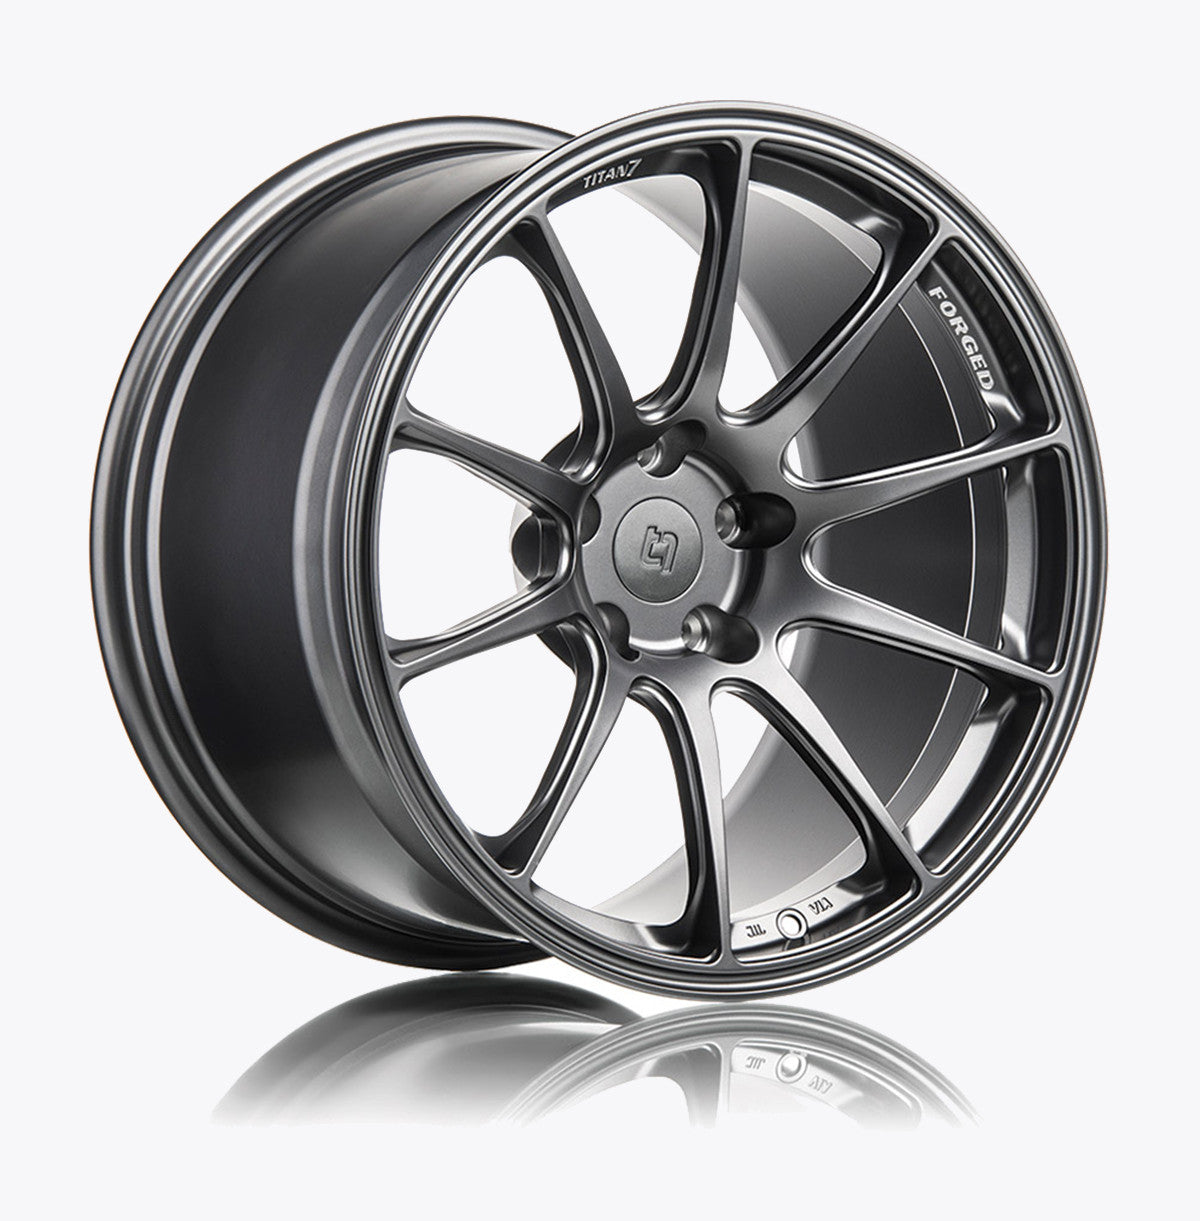 Titan7 T-R10 Forged 10 Spoke wheels for '01-'06 BMW E46 M3 | 5x120 |